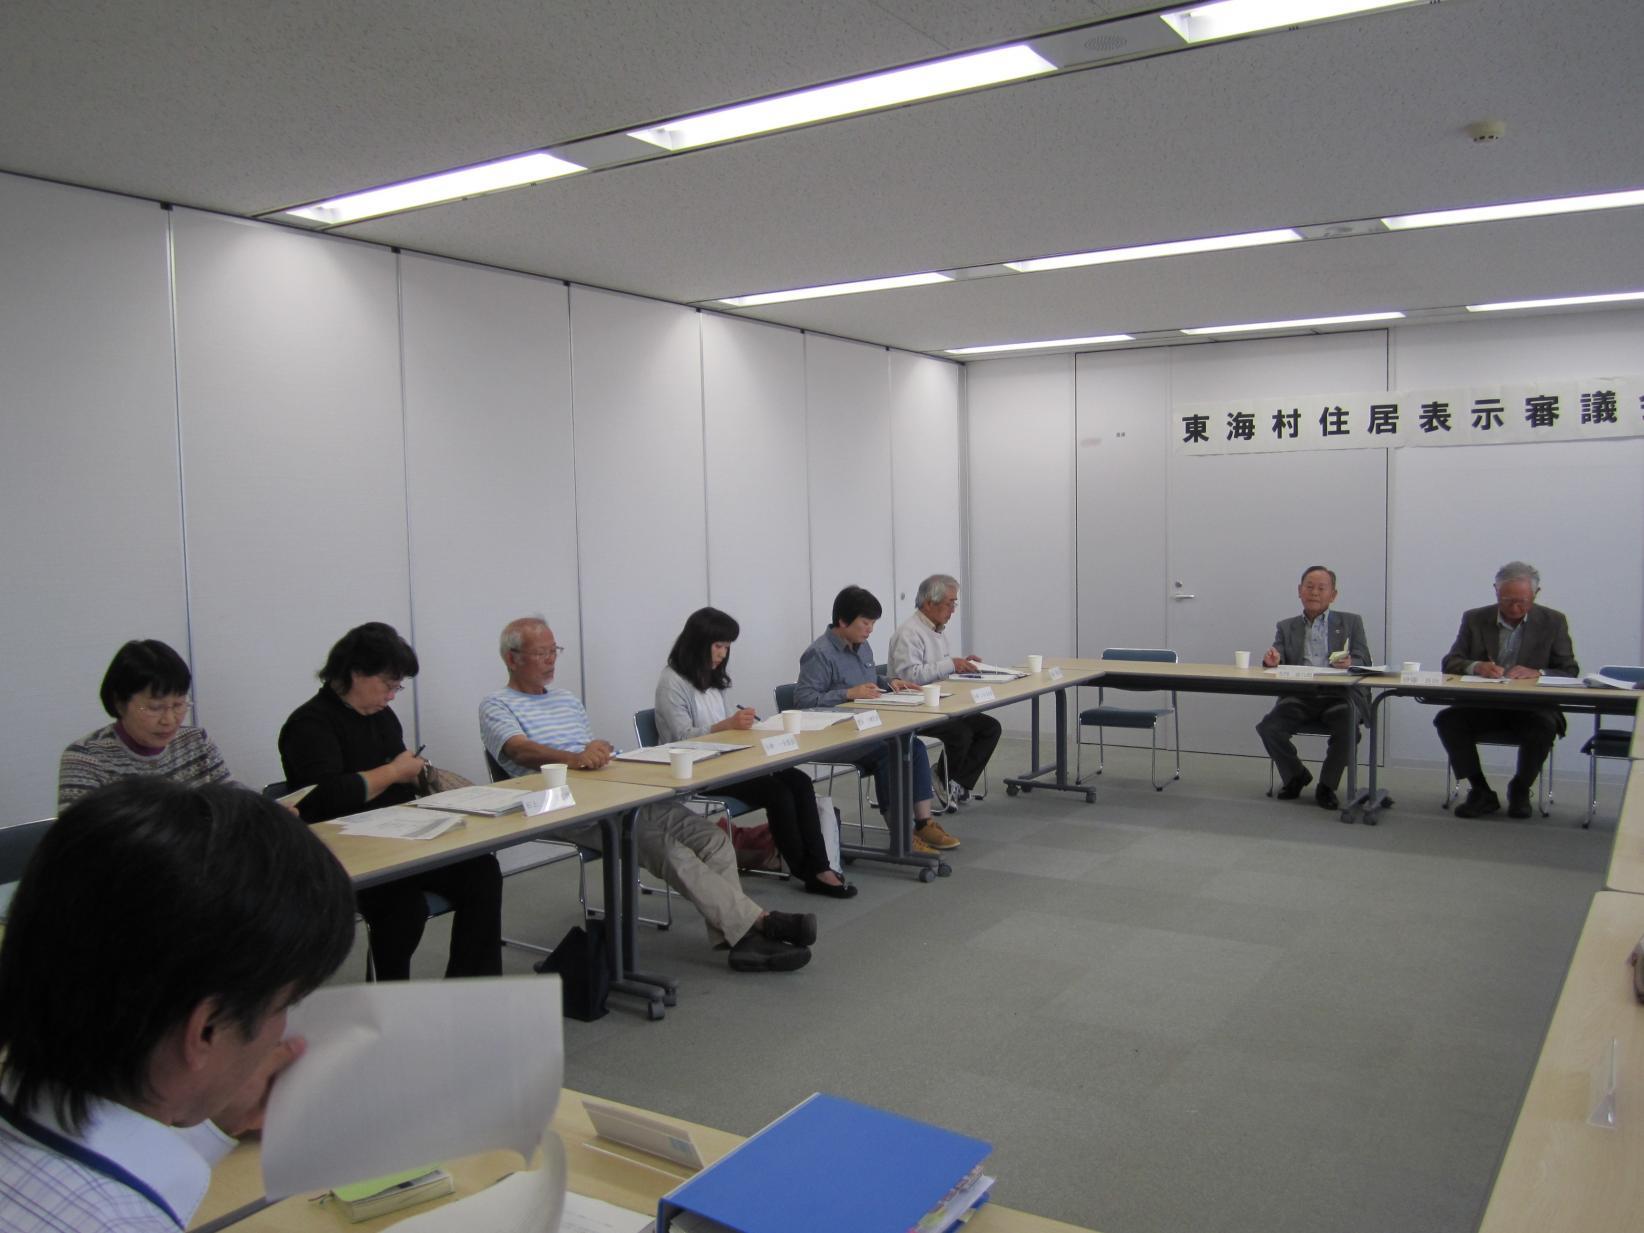 東海村住居表示審議会において、会議室にロの字型に並べられた机に向かって会議を進める参加者、9名ほどが写っている写真